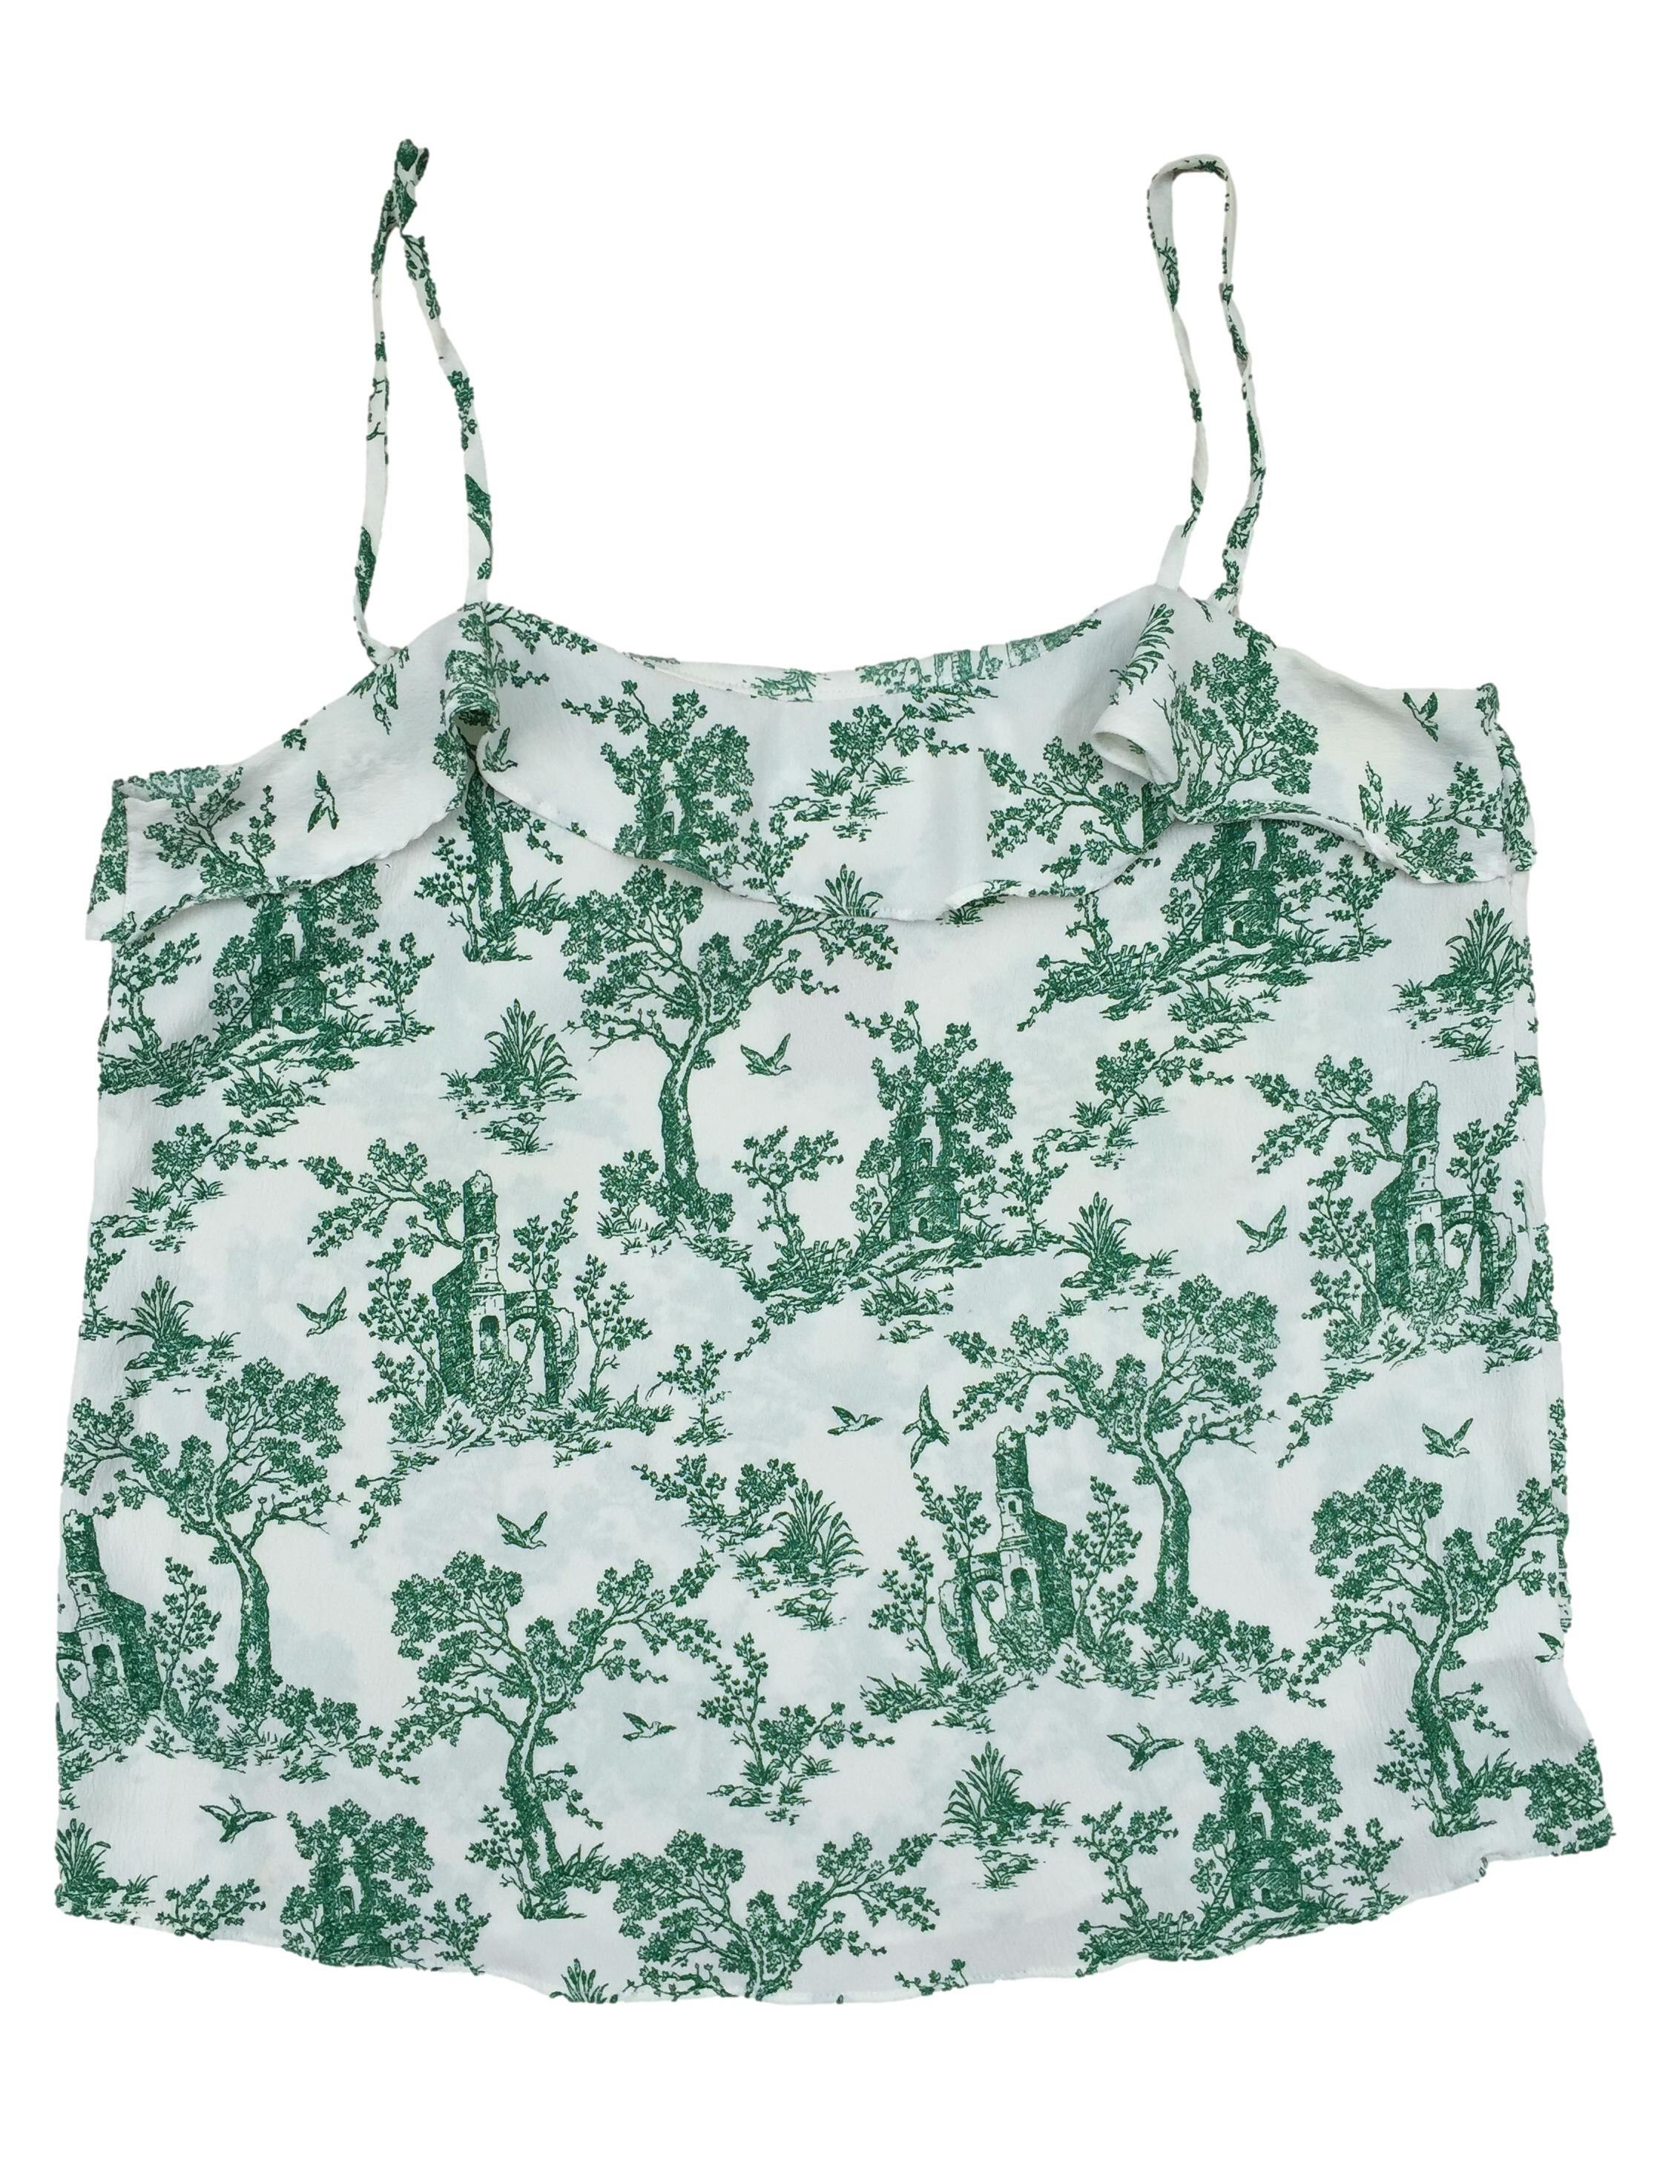 Busa H&M blanco con estampado de flores verdes, tiras regulables. Busto: 88cm, Largo: 58cm